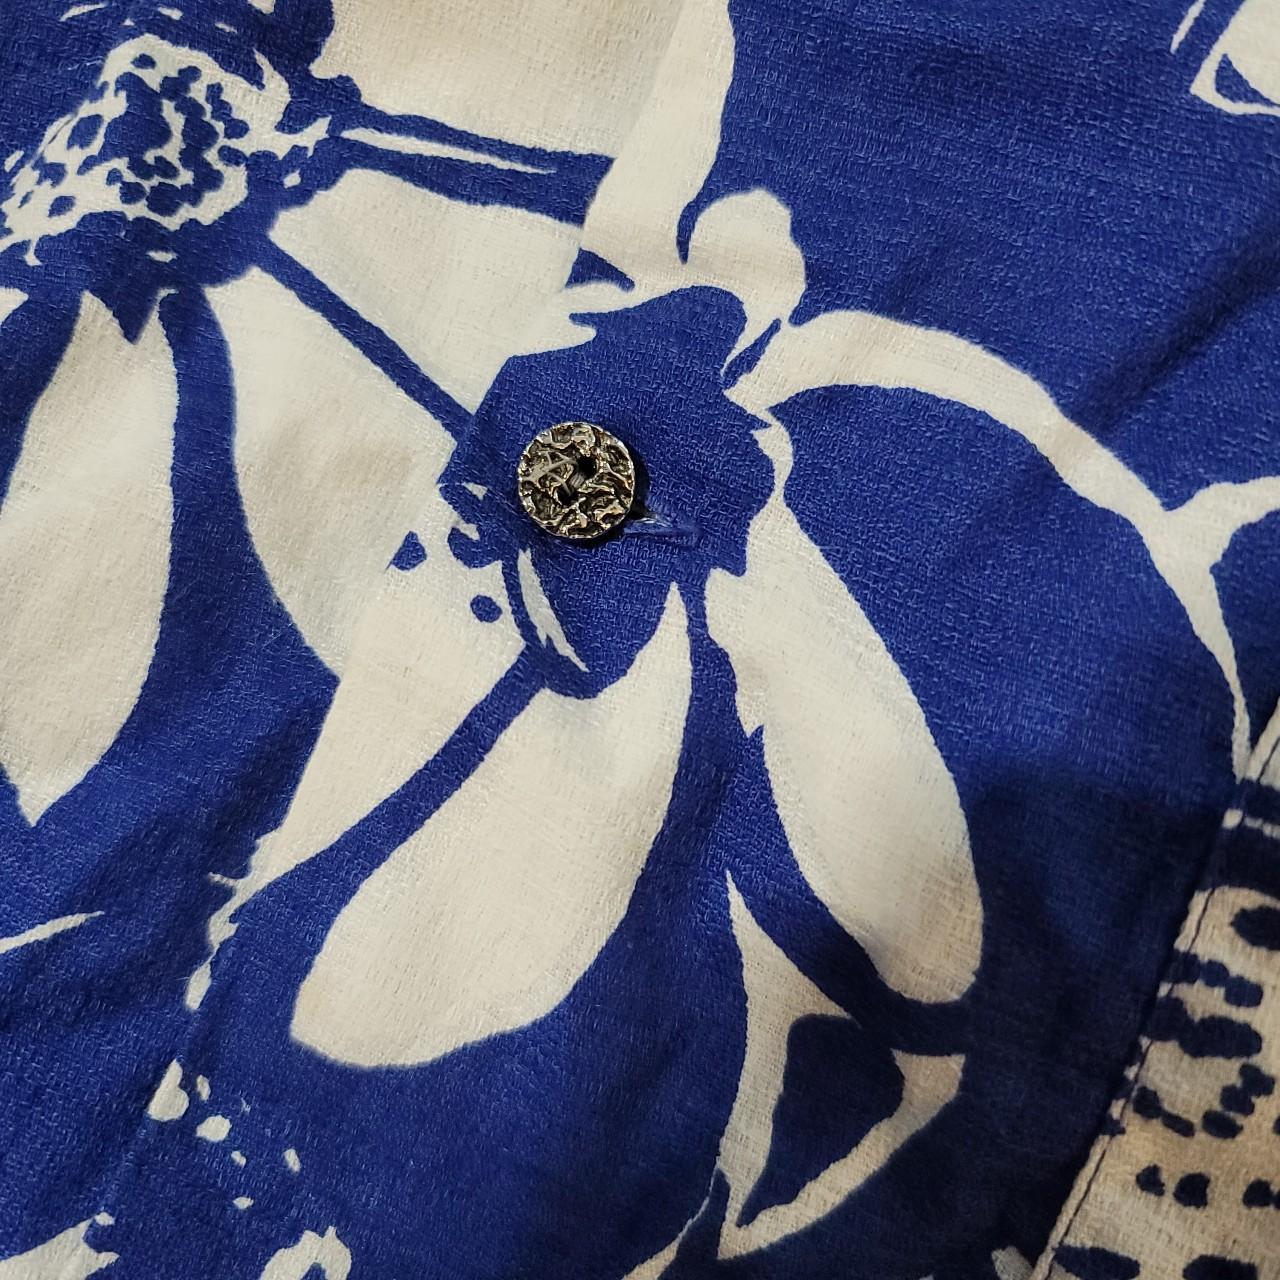 Vintage Mo Bettah Hawaiian Floral Button Up Shirt... - Depop